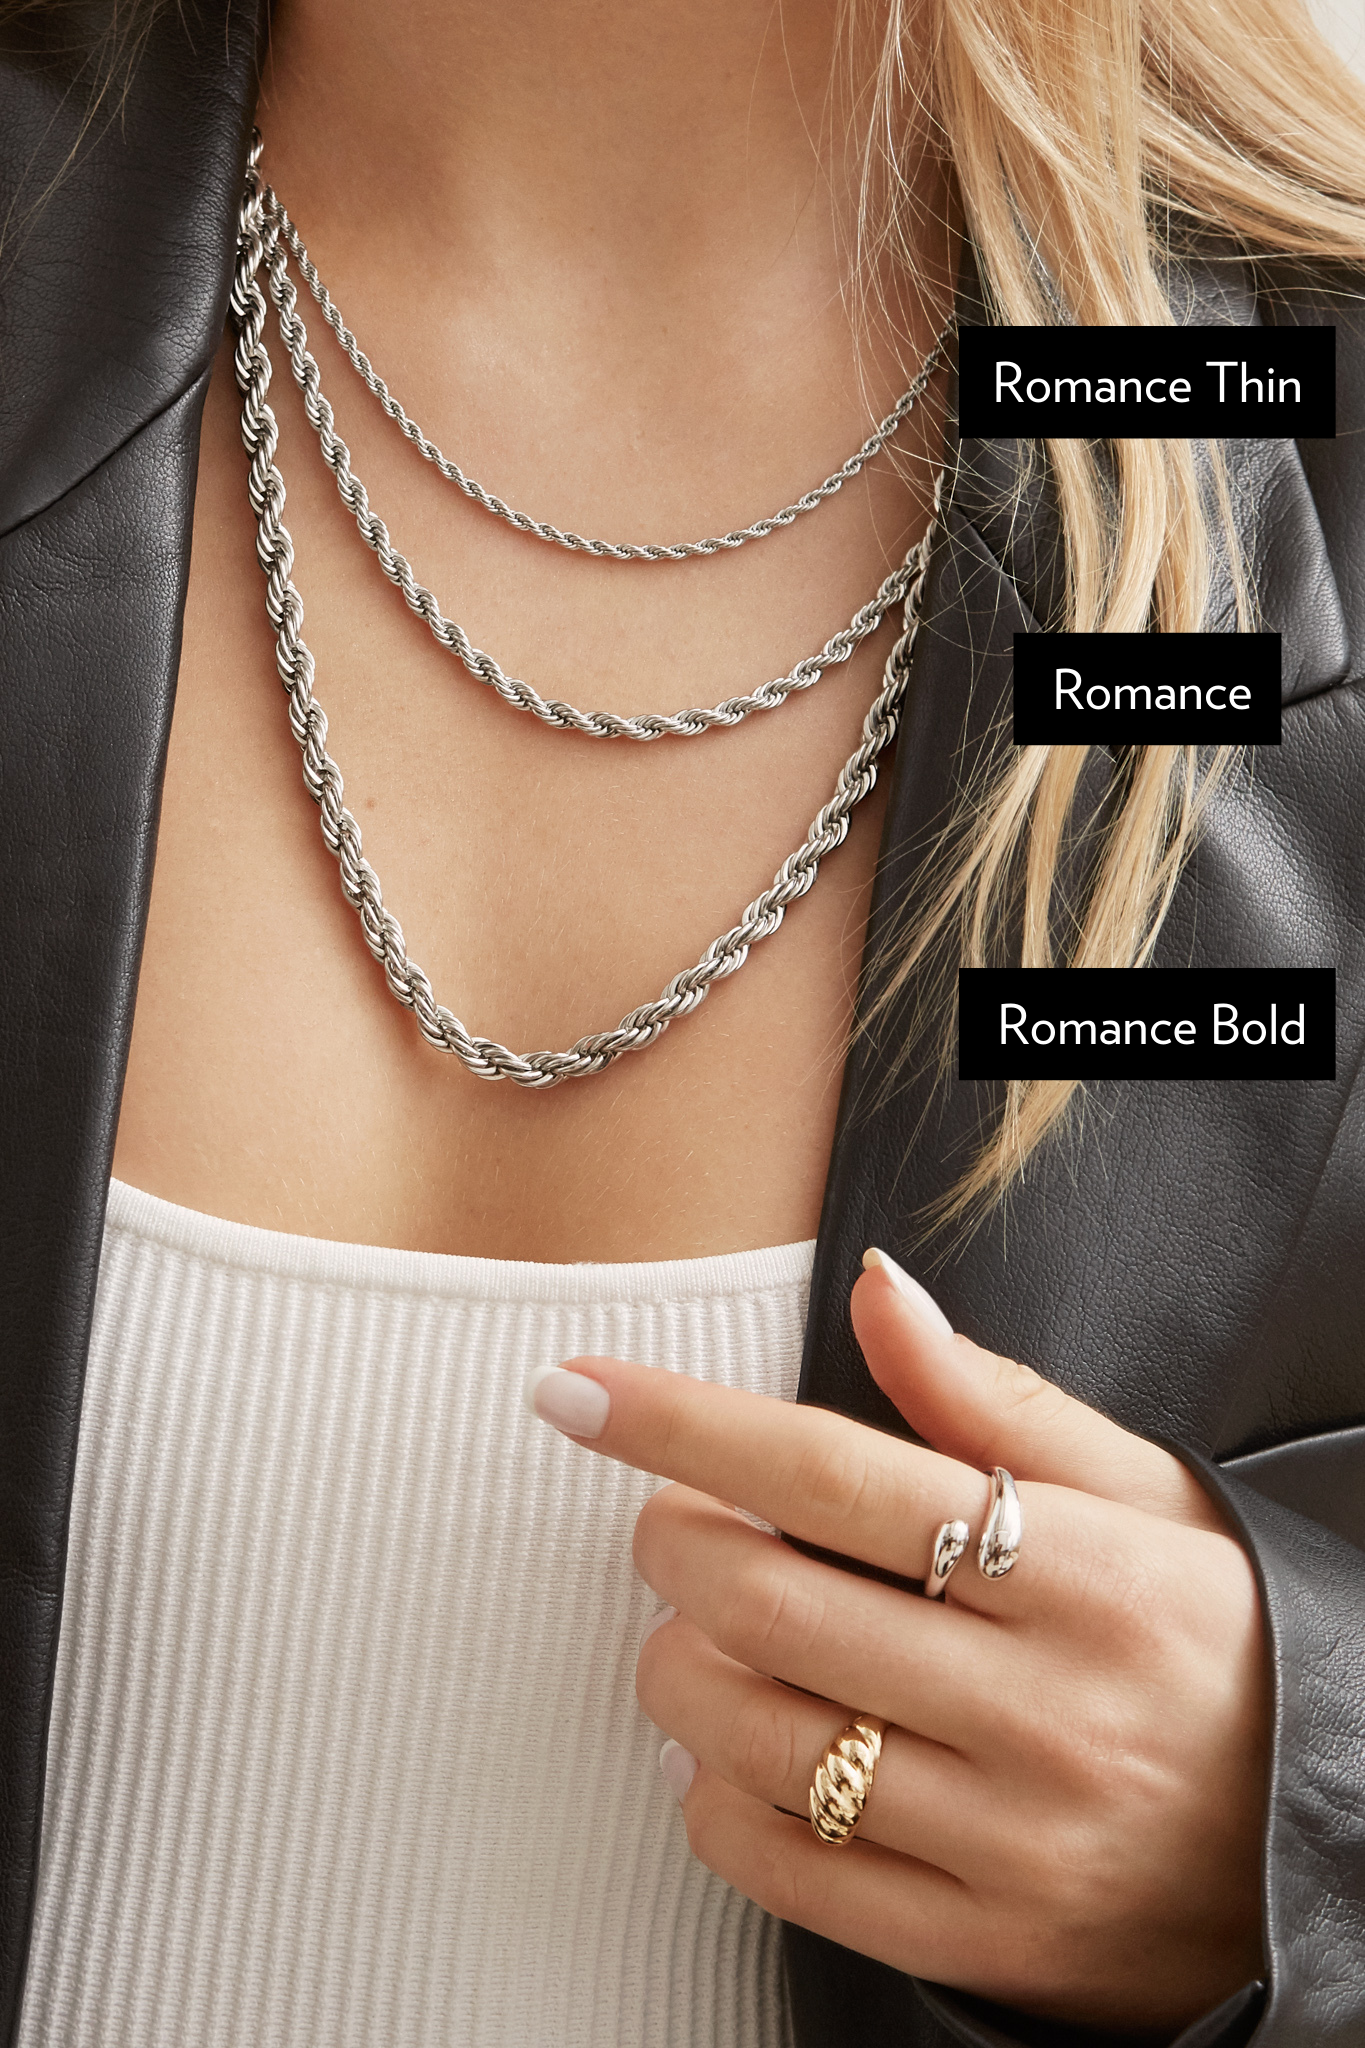 Romance Necklace - Silver Romance Necklace - Silver